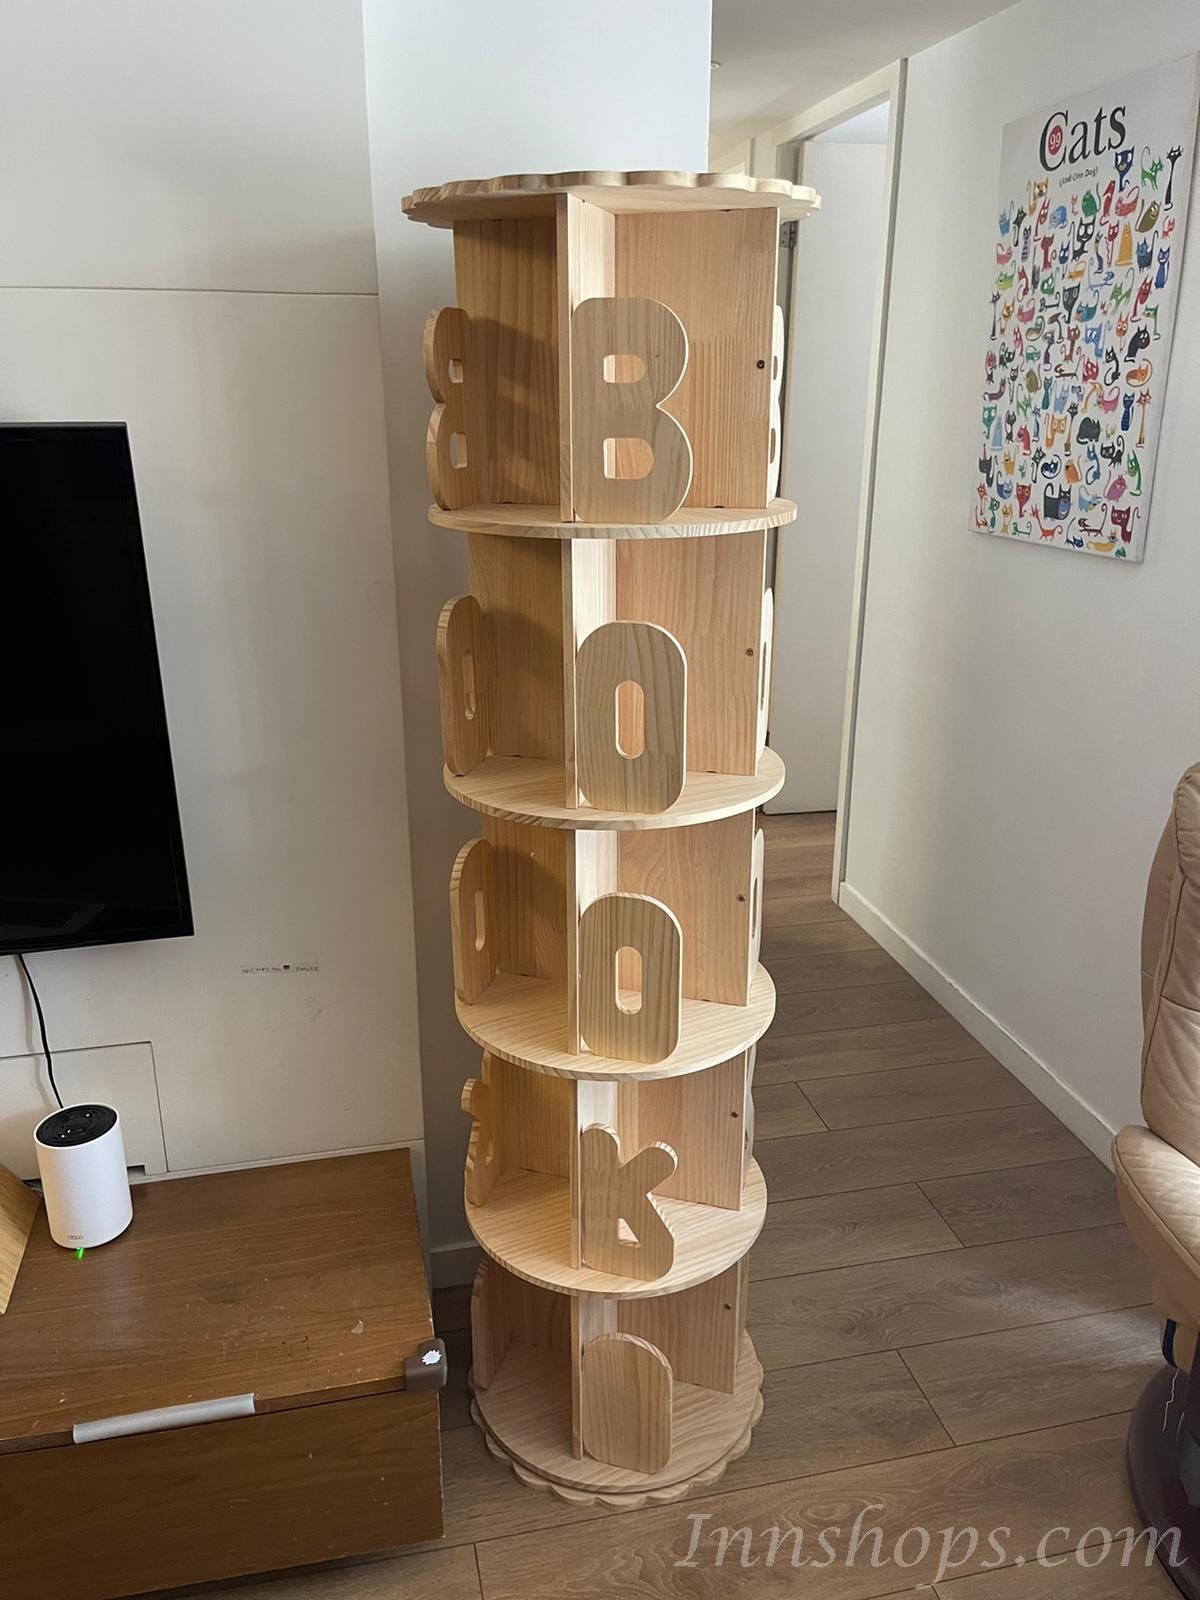 芬蘭松木系列 實木書架書櫃 46cm (IS4970)